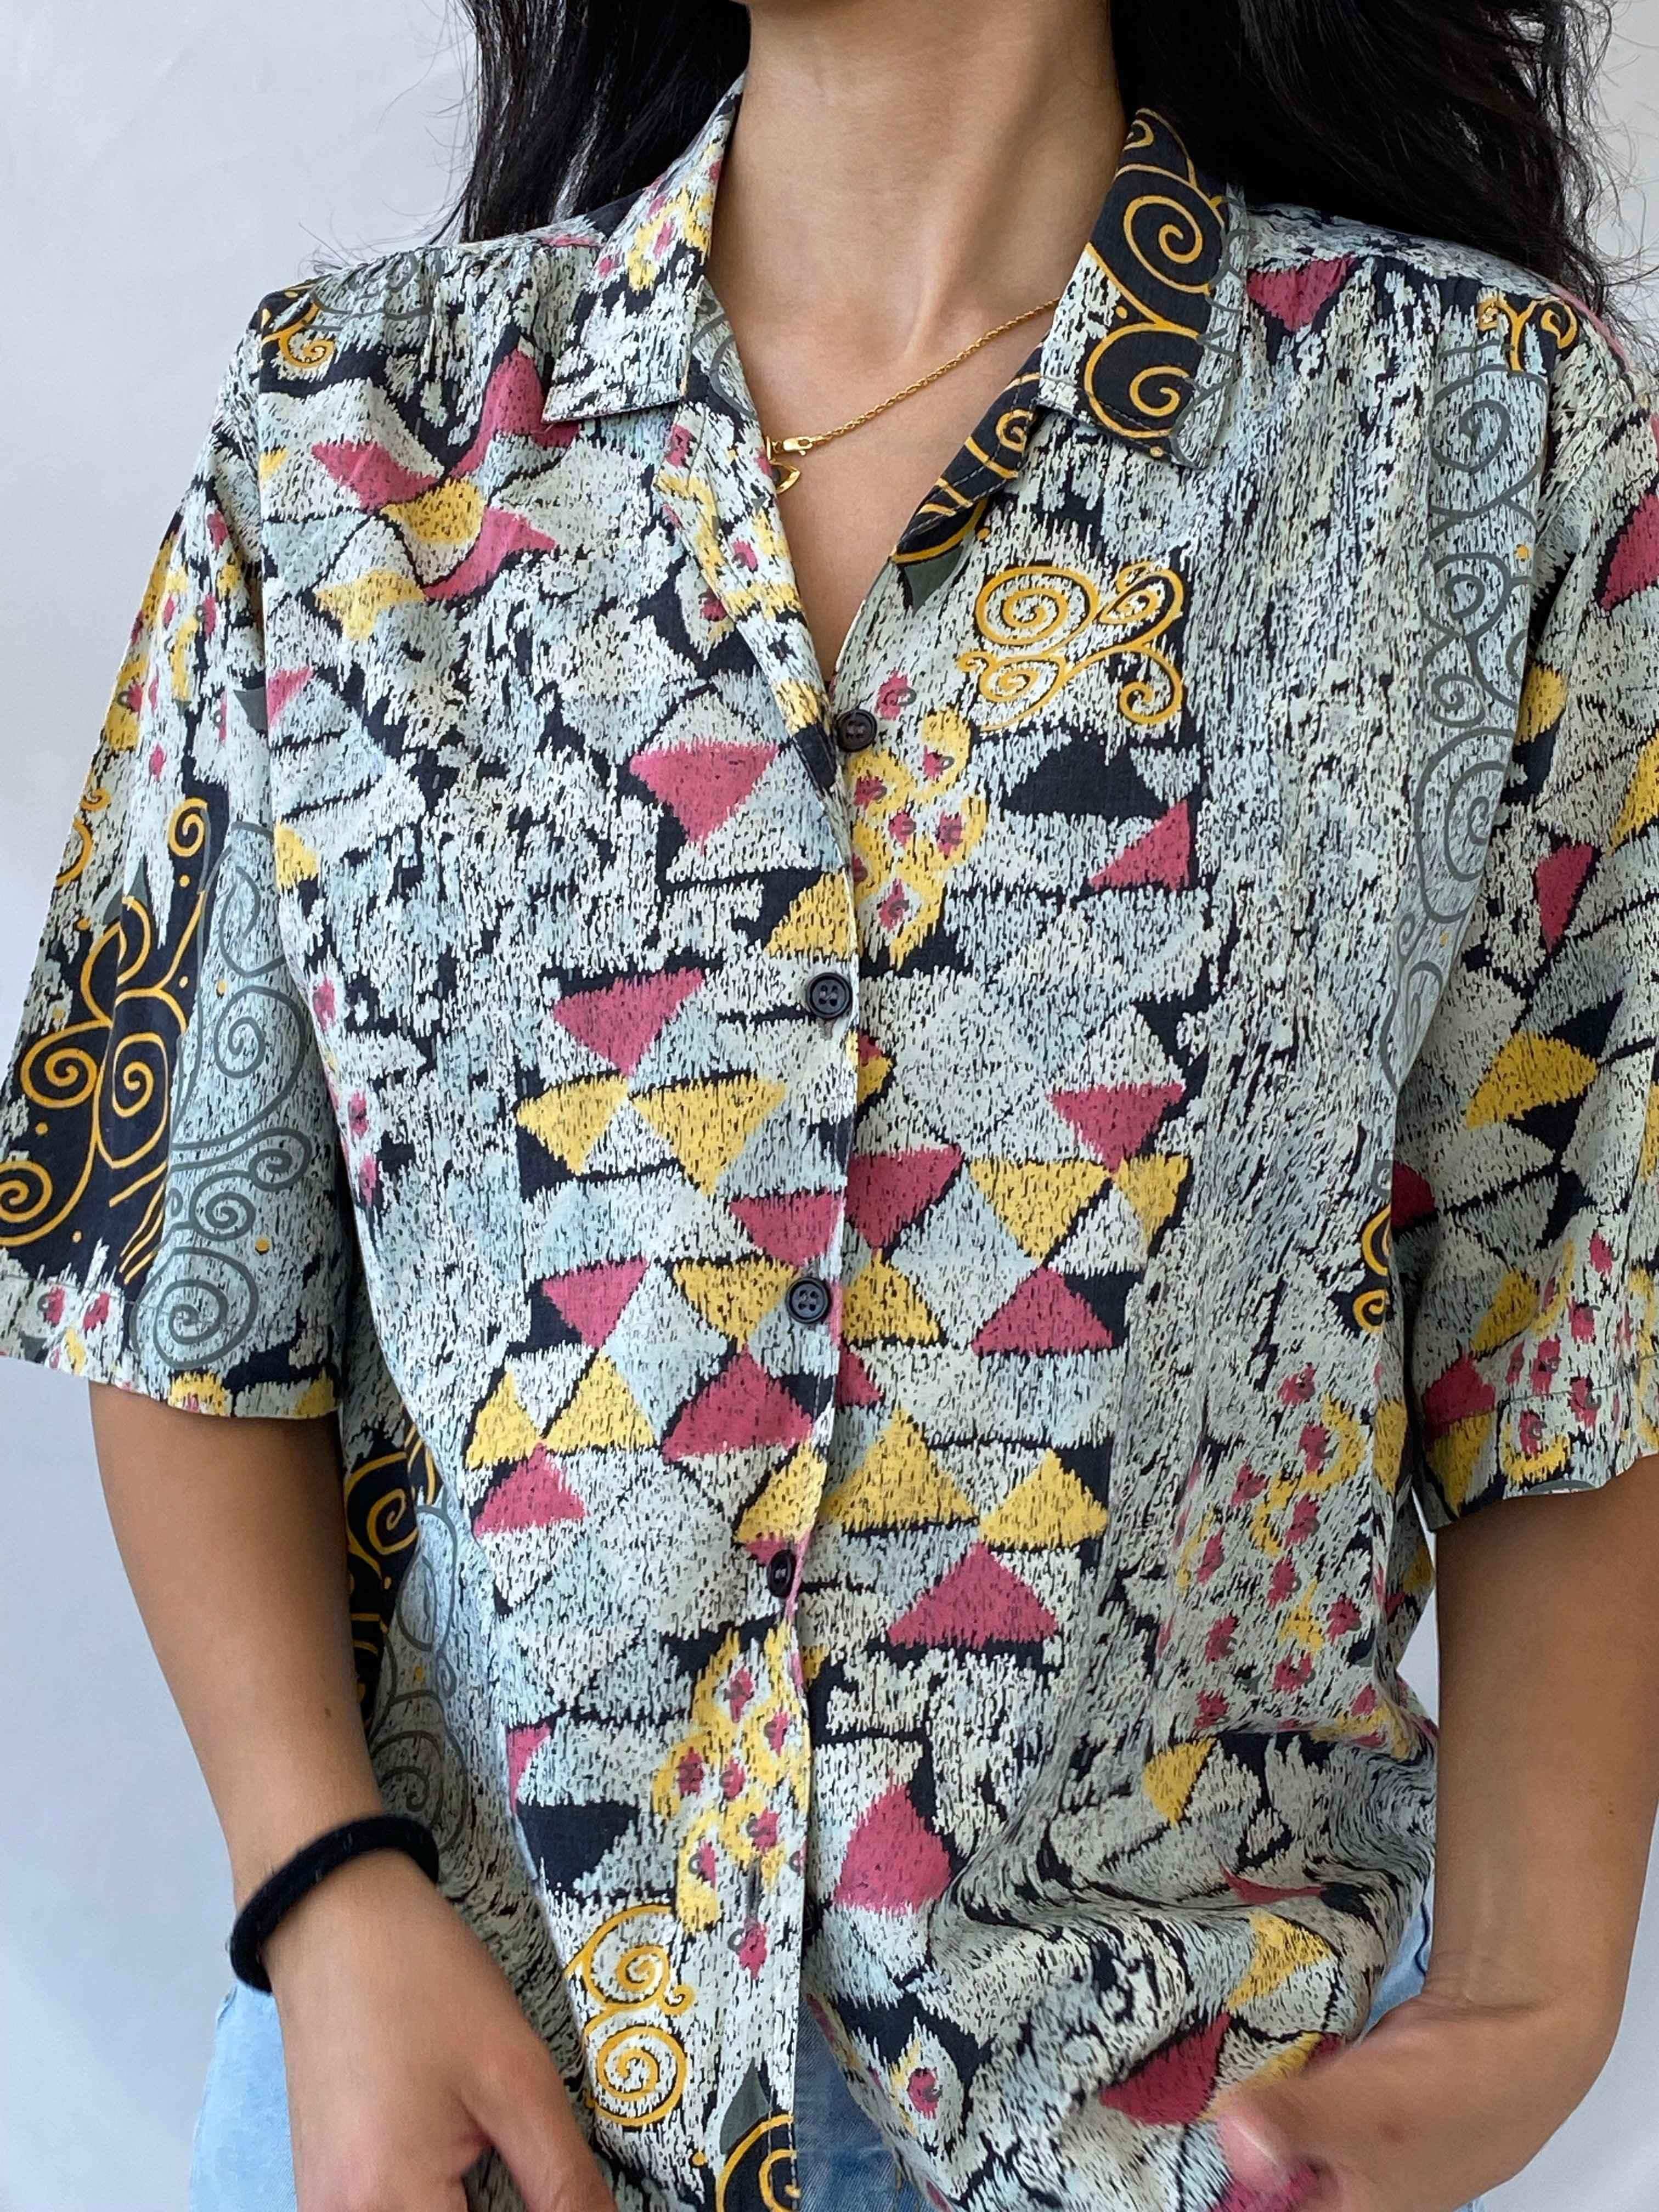 Beautiful Vintage Patterned Shirt - Balagan Vintage Half Sleeve Shirt Rahmeh, shirt